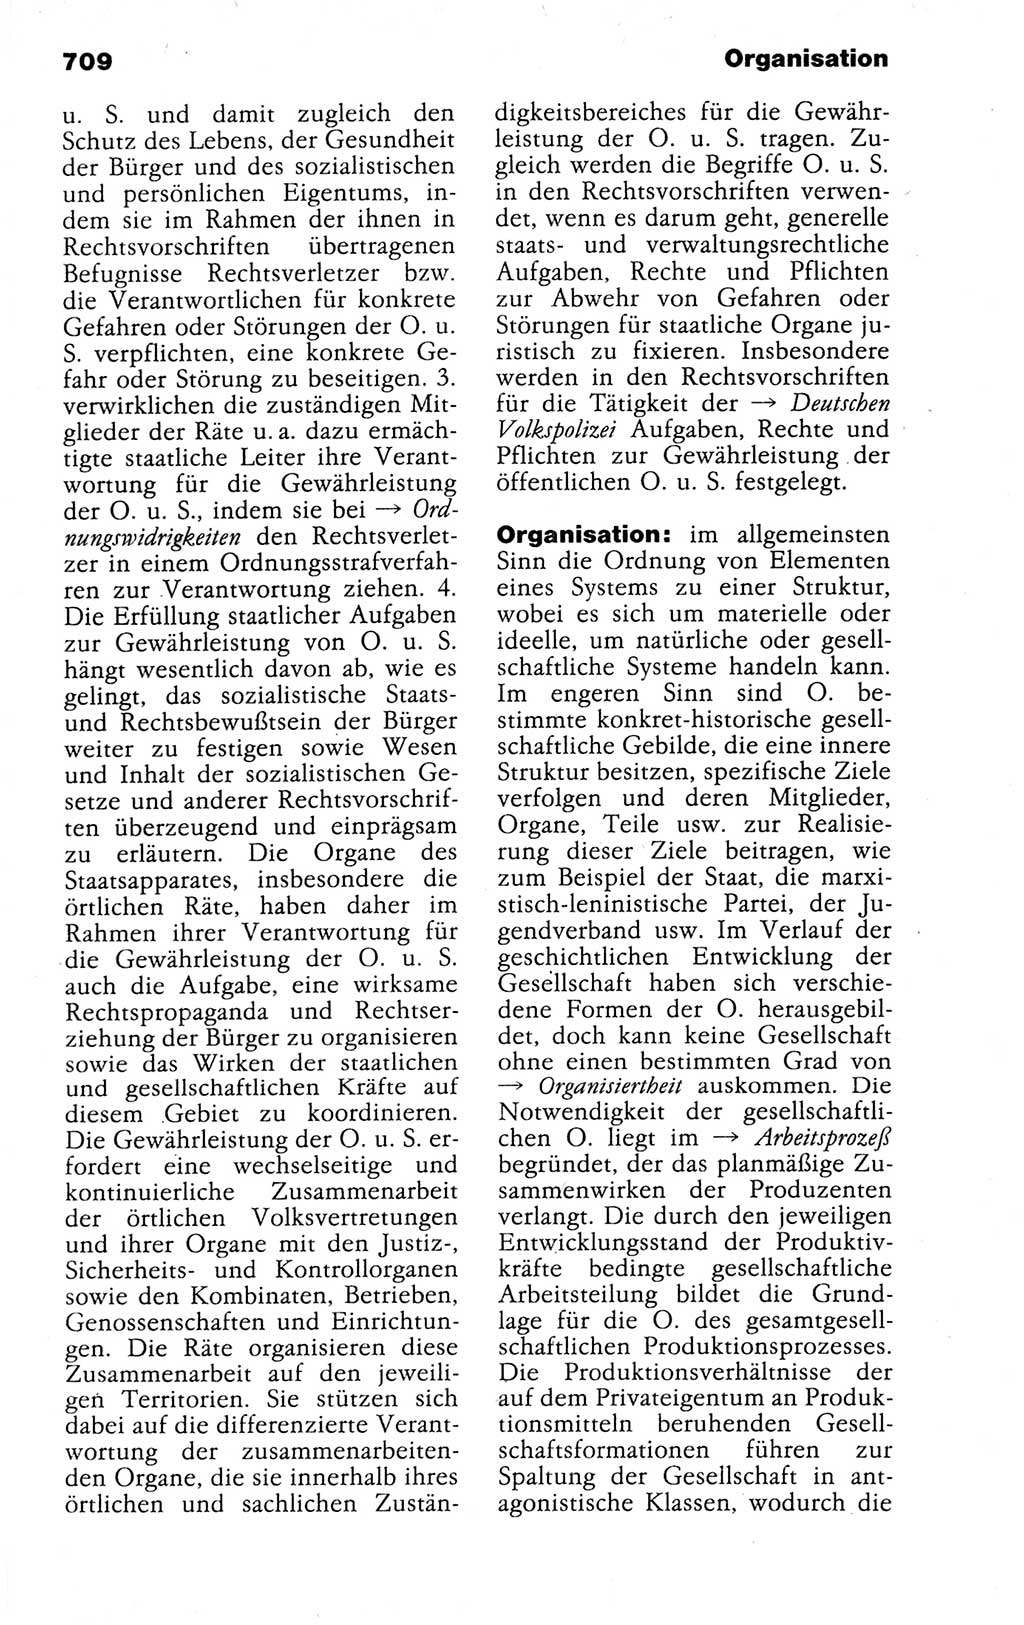 Kleines politisches Wörterbuch [Deutsche Demokratische Republik (DDR)] 1988, Seite 709 (Kl. pol. Wb. DDR 1988, S. 709)